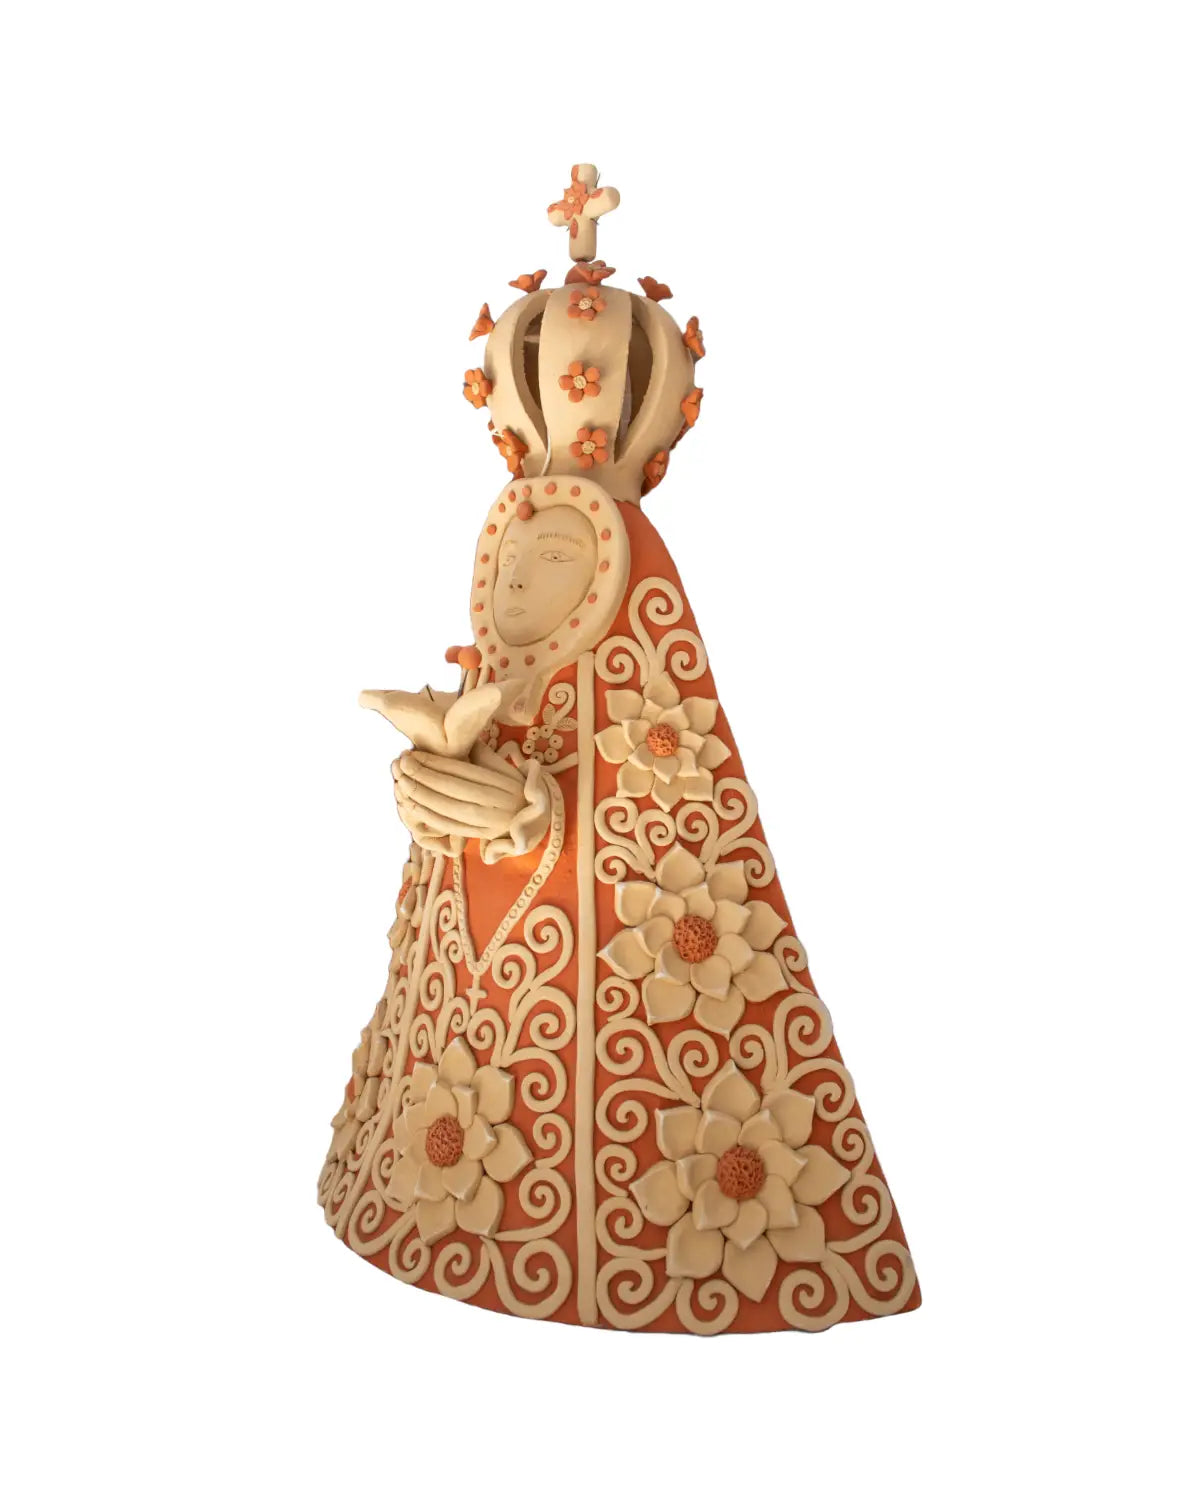 Virgen de 30 cms; barro modelado a mano